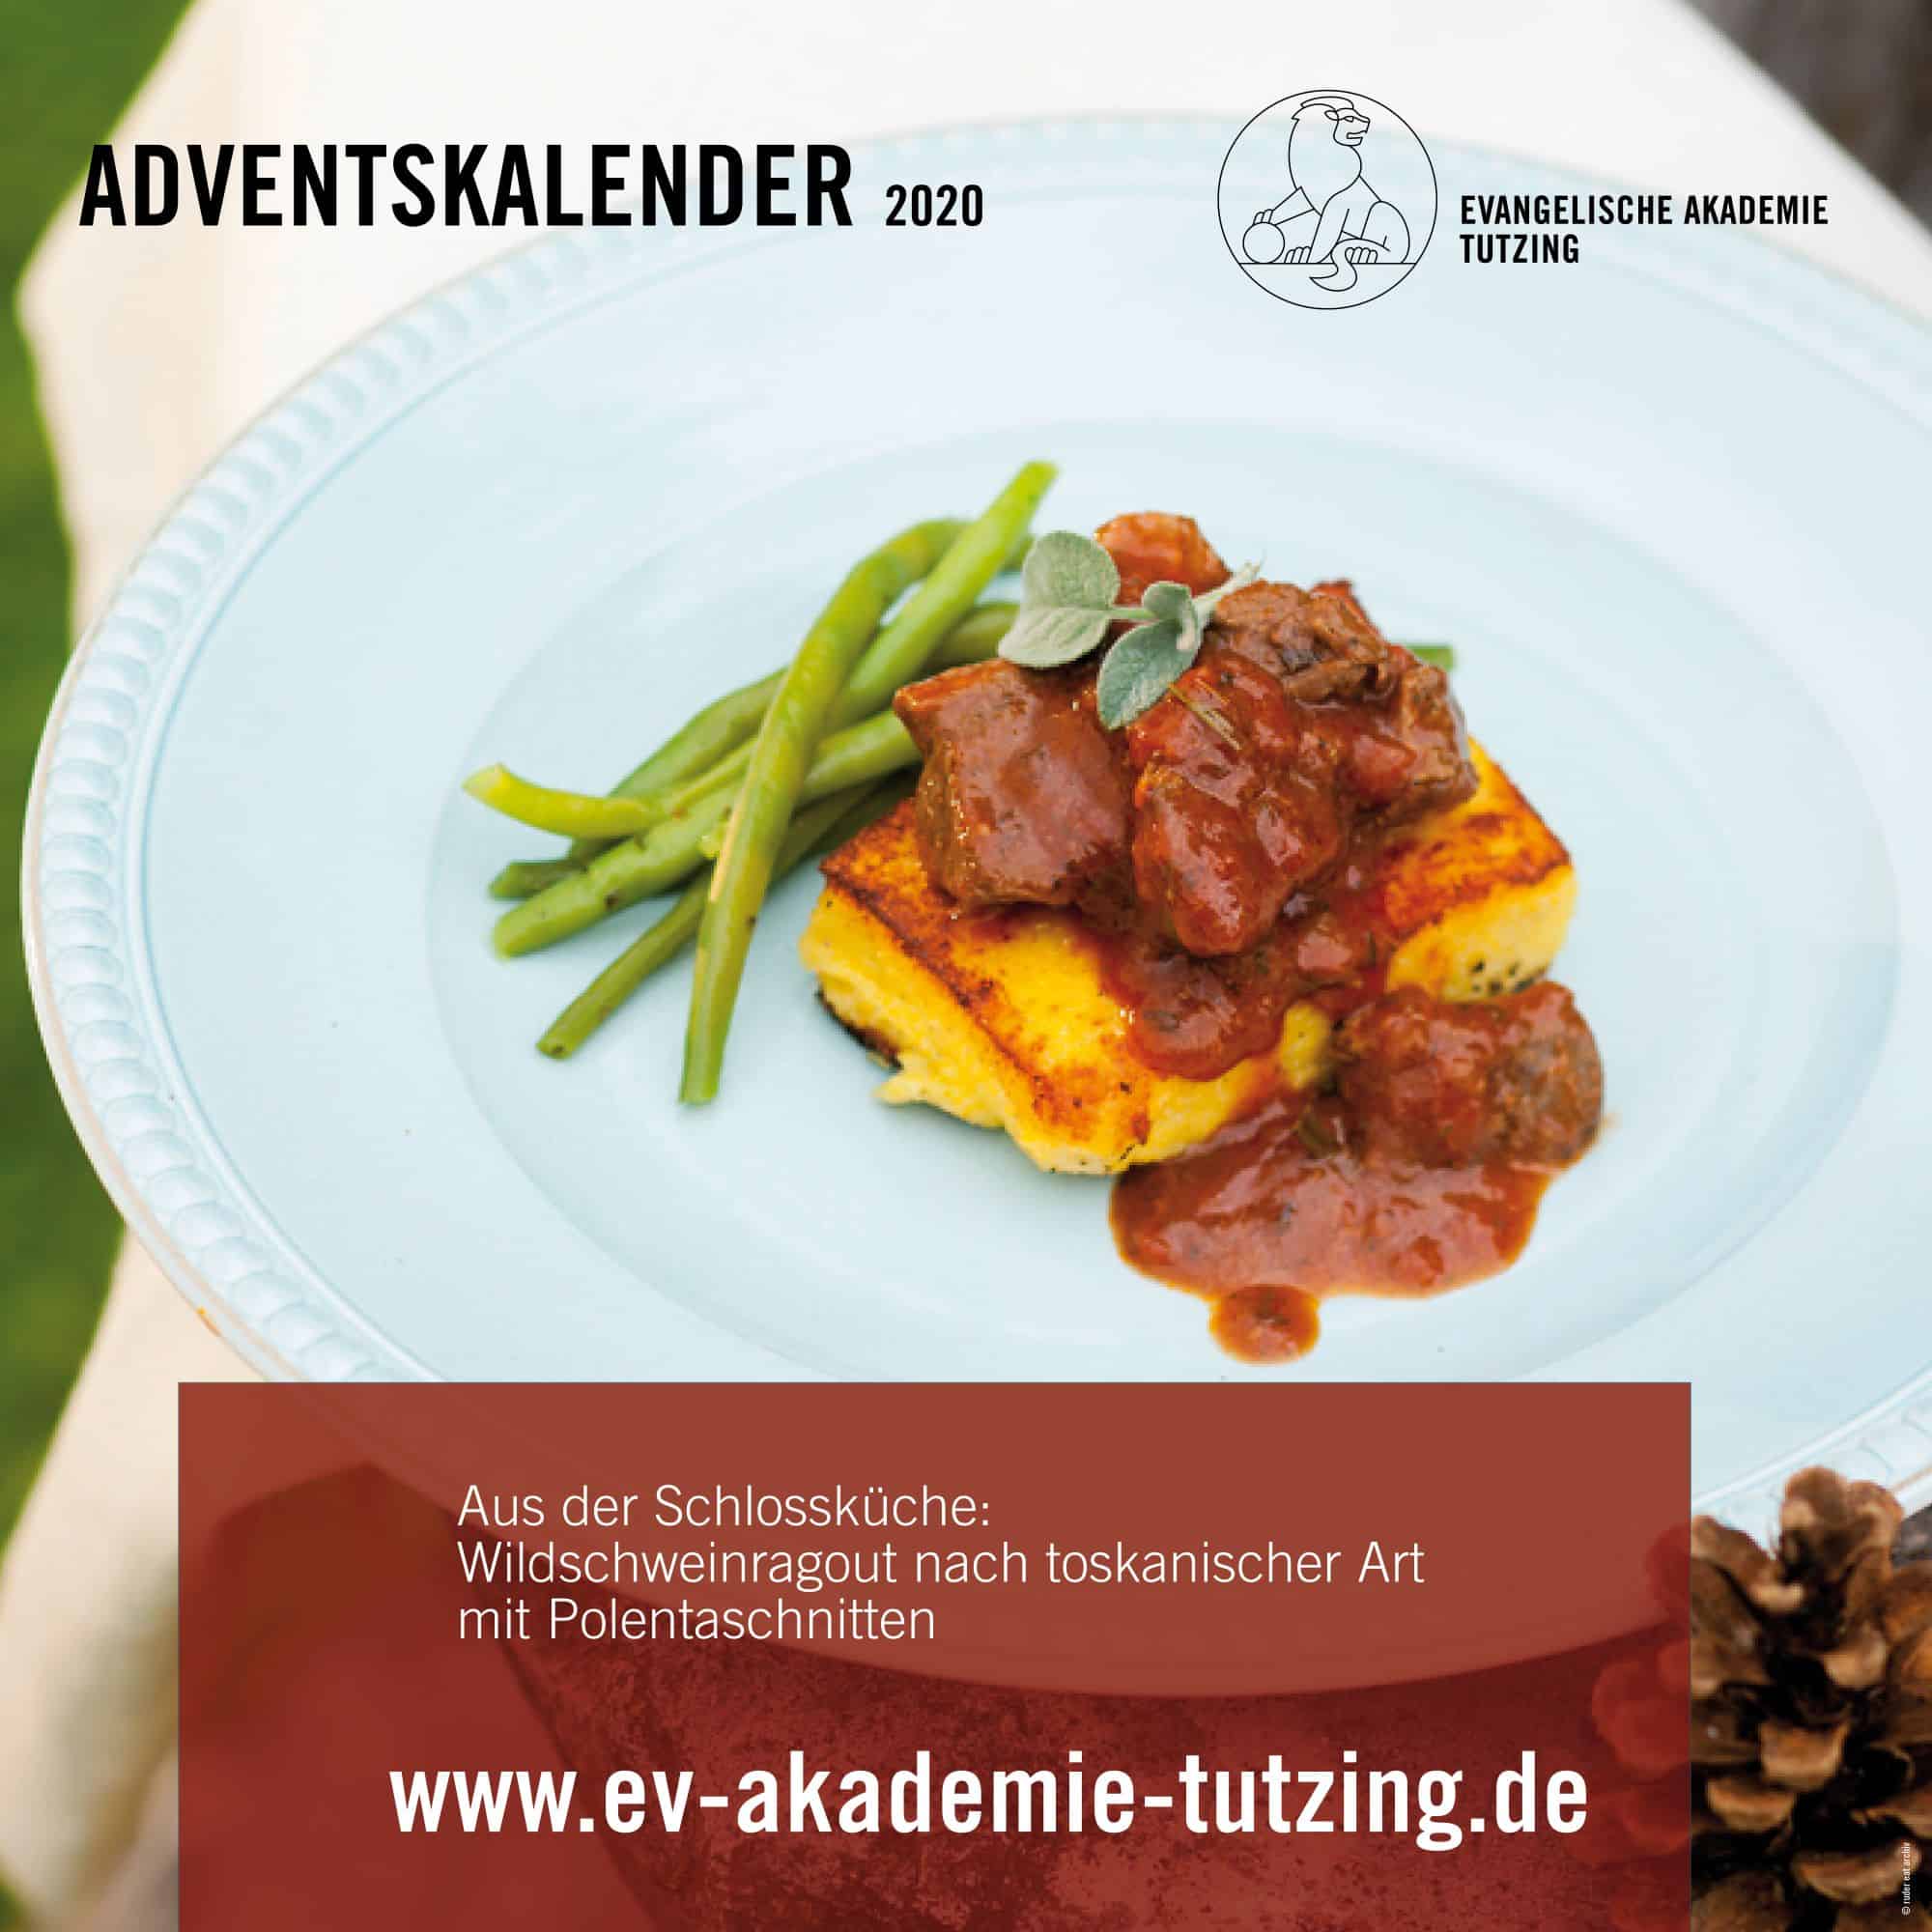 Rezept Schlosskochbuch, Evangelische Akademie Tutzing